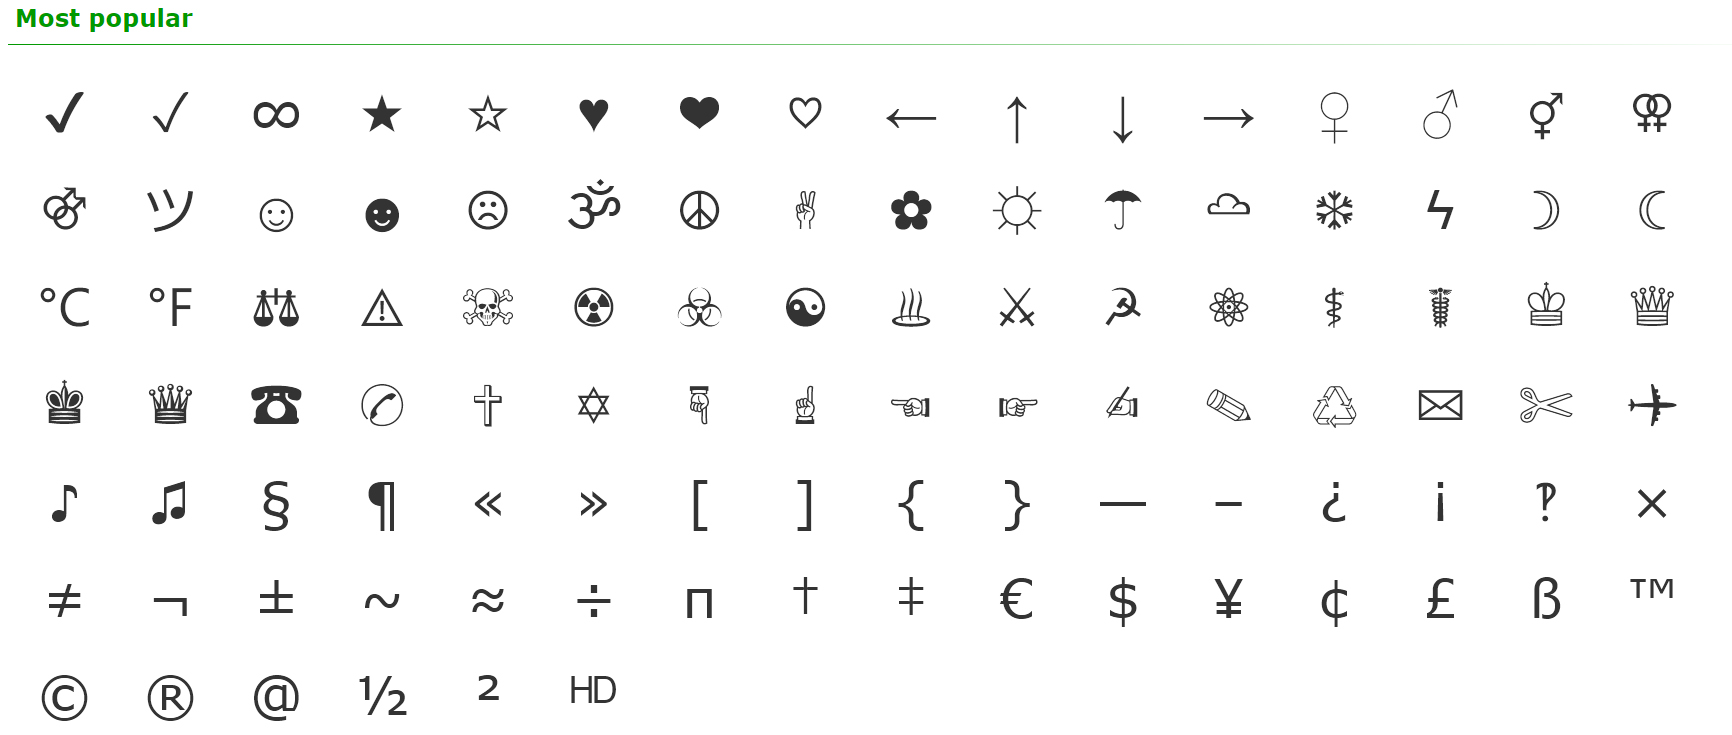 ꒦꒷ ⩩ 𝗵ɥꭎ𝗻𝗷ᴉ𝗻 ꜝ﹆🗯️  Cute text symbols, Cool symbols, Cool text symbols